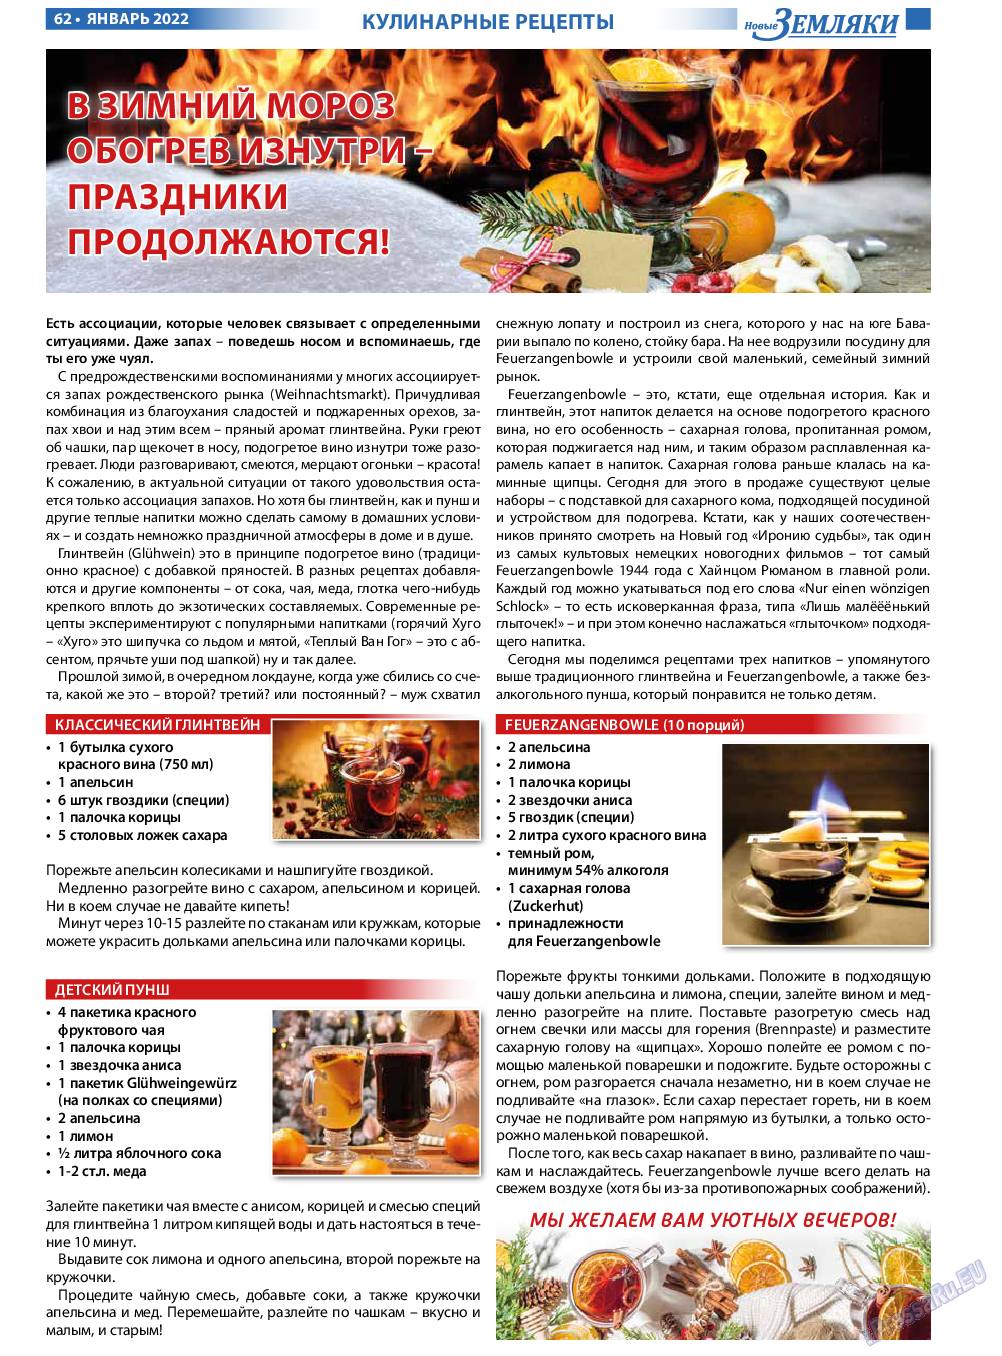 Новые Земляки, газета. 2022 №1 стр.62